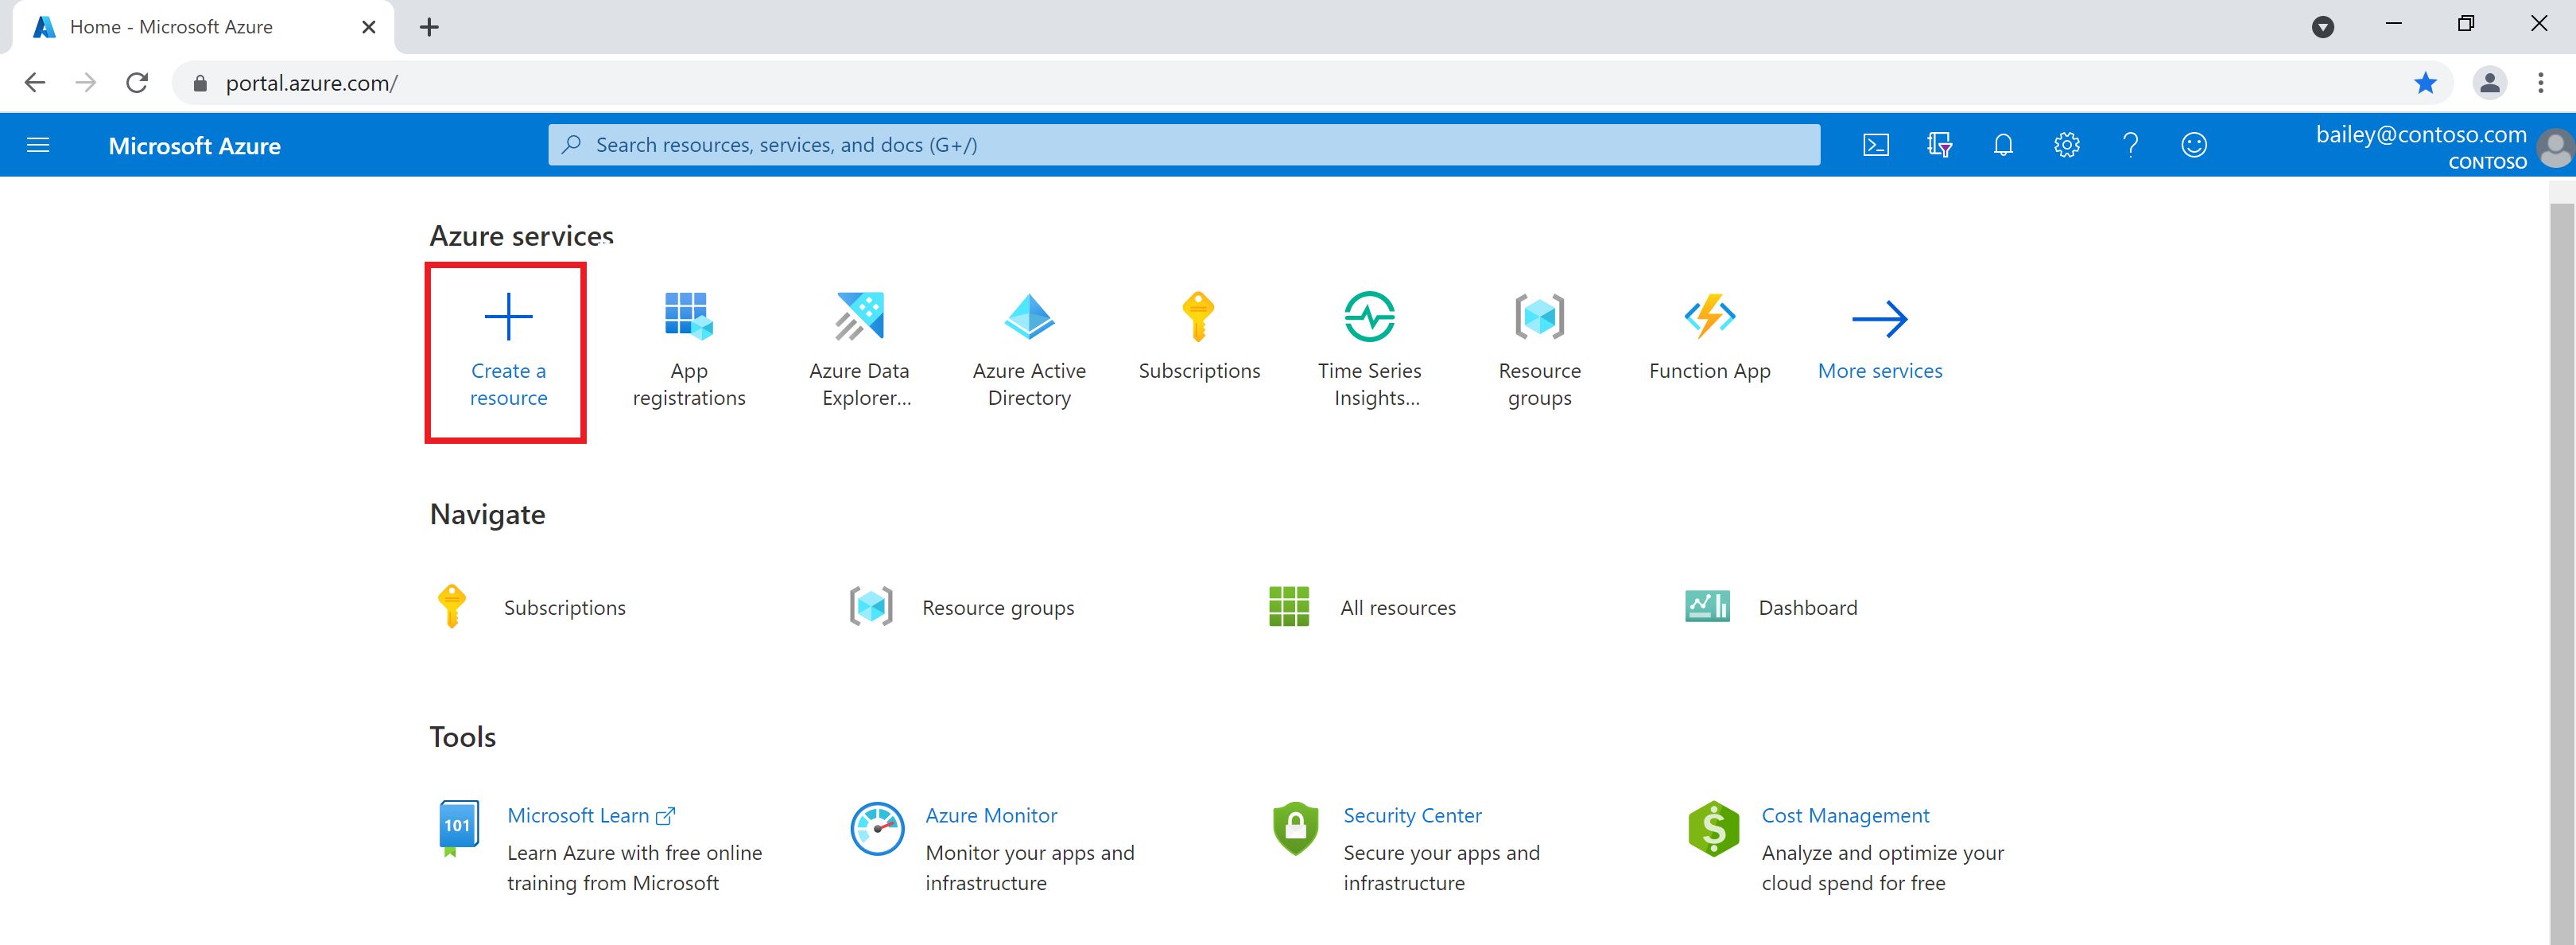 Captura de tela do portal do Azure, realçando o ícone 'Criar um recurso' na home page.